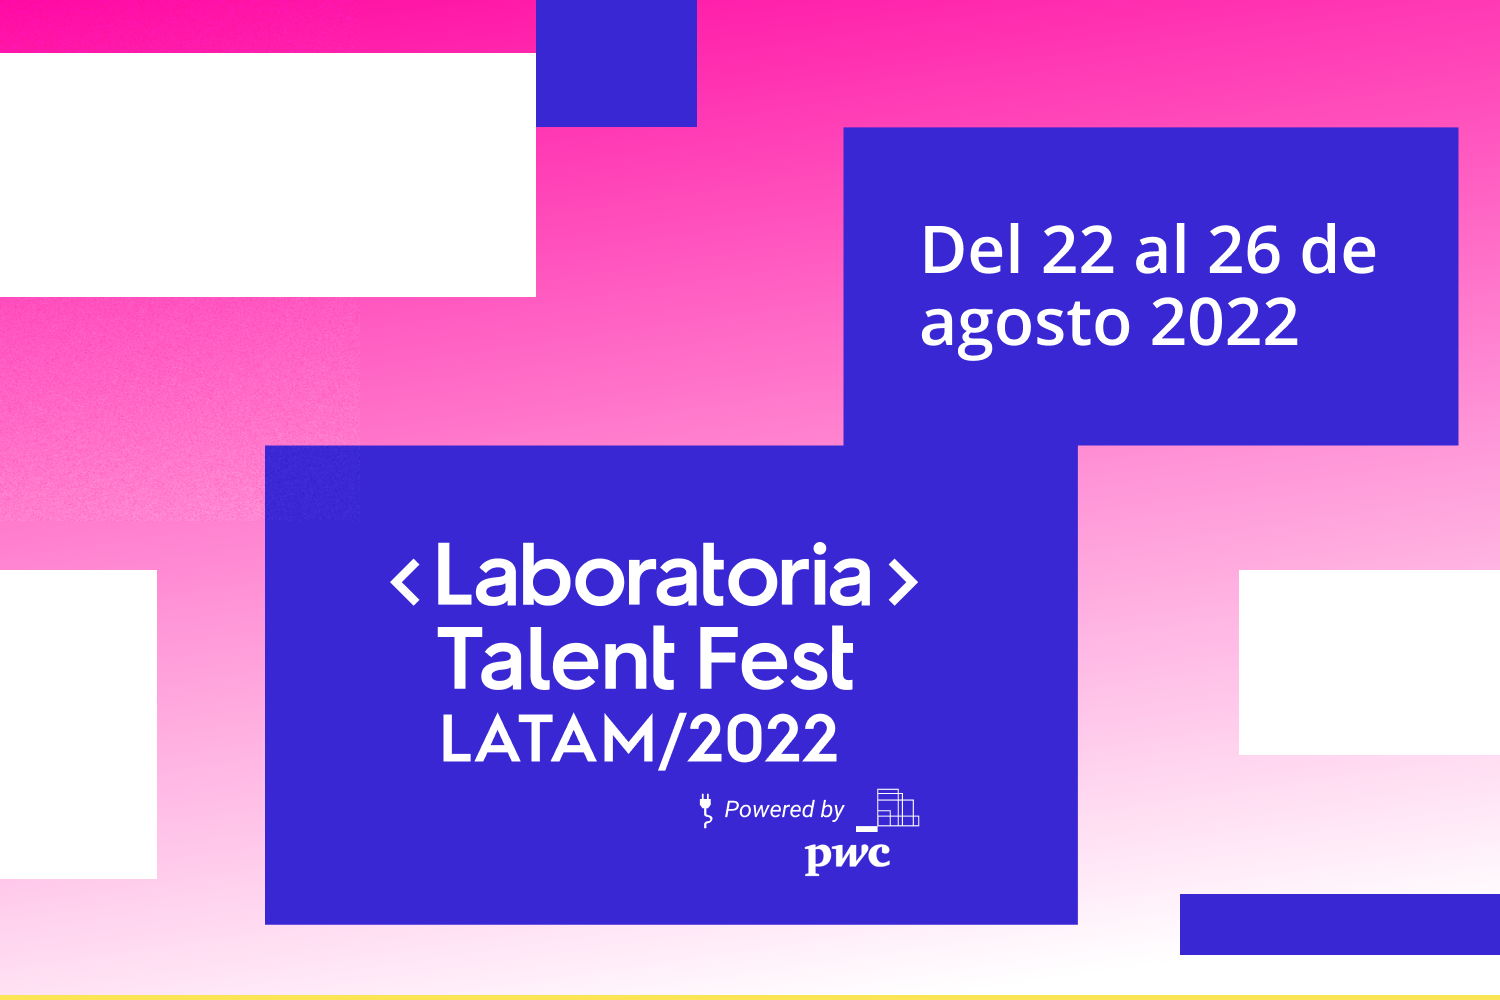 Conoce todos los detalles de la última edición del Talent Fest, la hackathon de mujeres de Laboratoria y la más grande de América Latina.